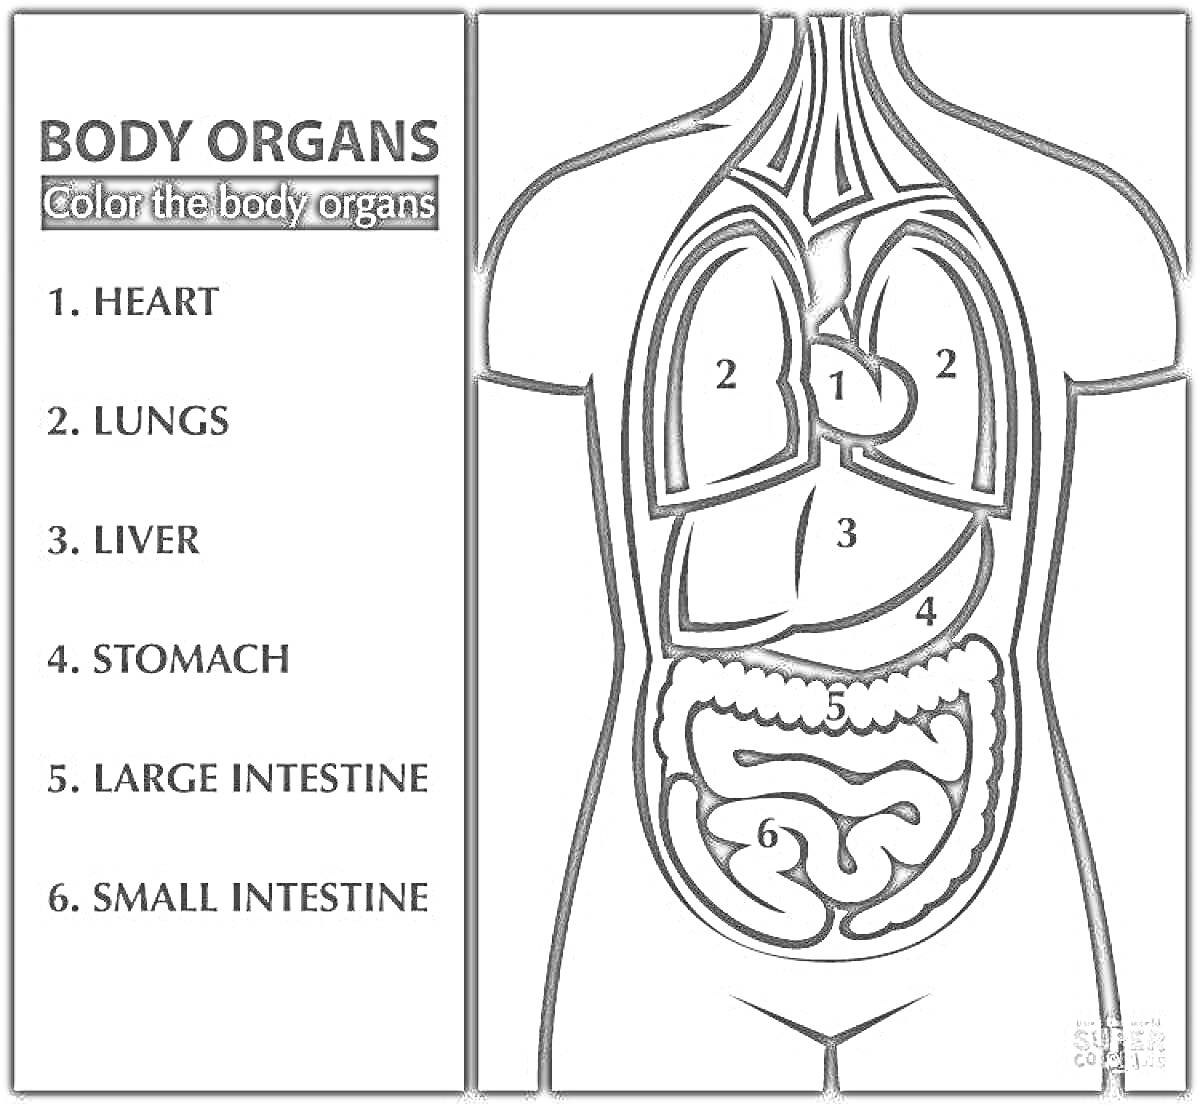 Органы тела - сердце, легкие, печень, желудок, толстый кишечник, тонкий кишечник